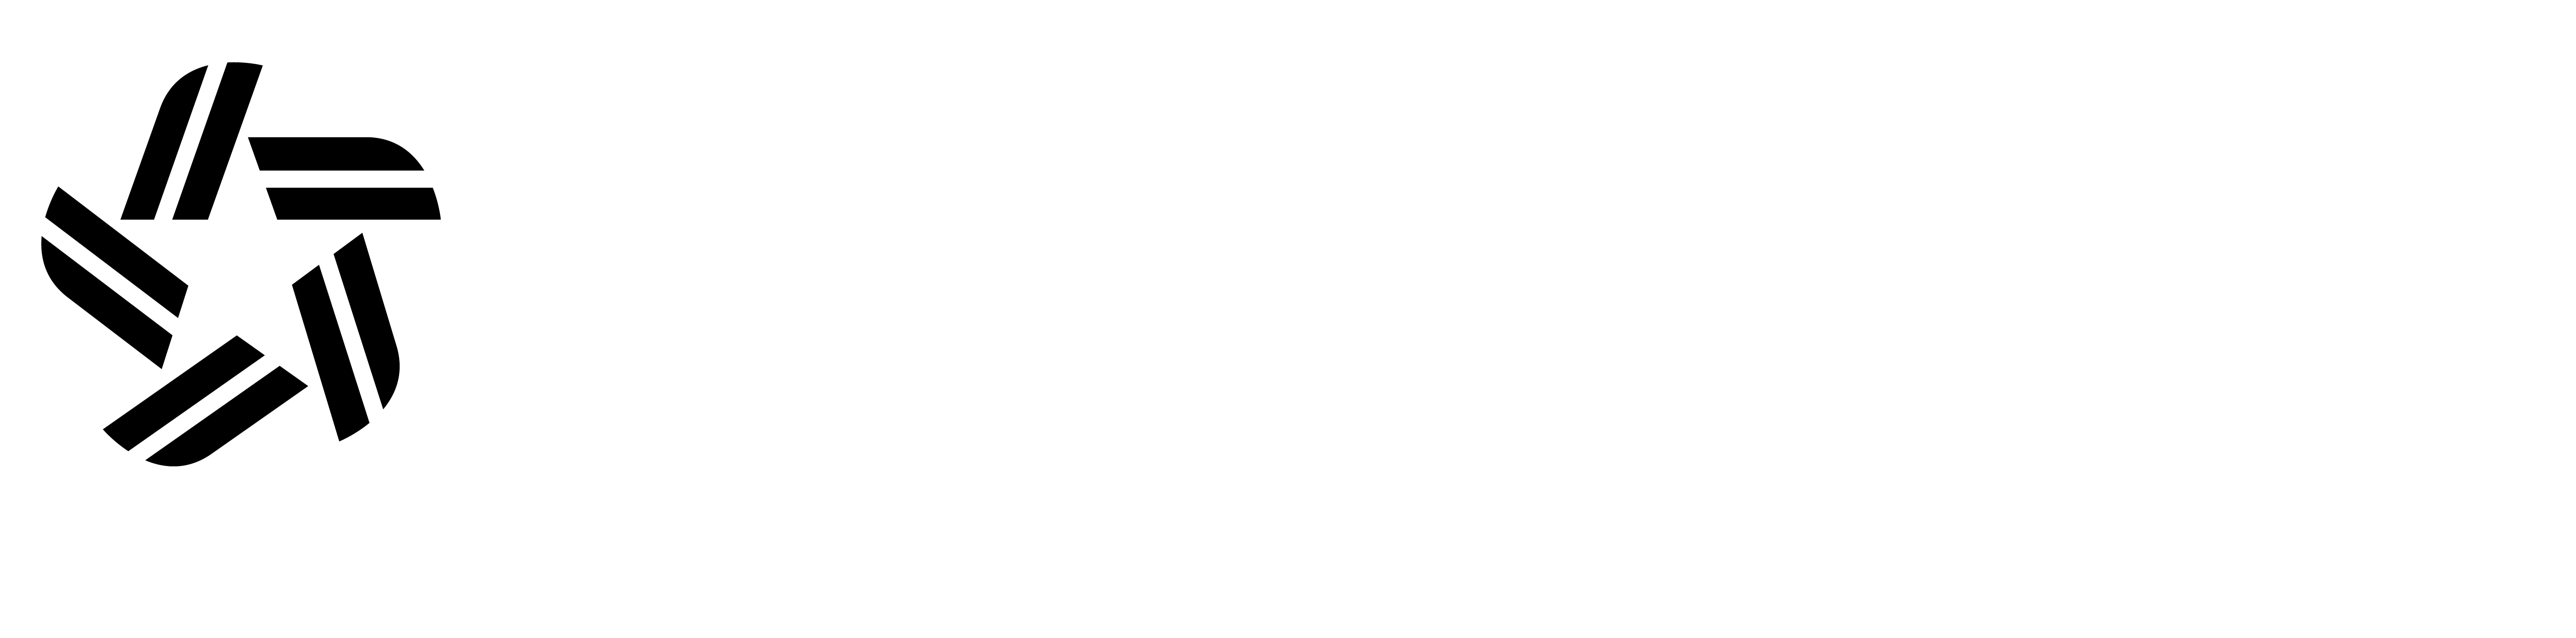 Coldstar Systems Ltd